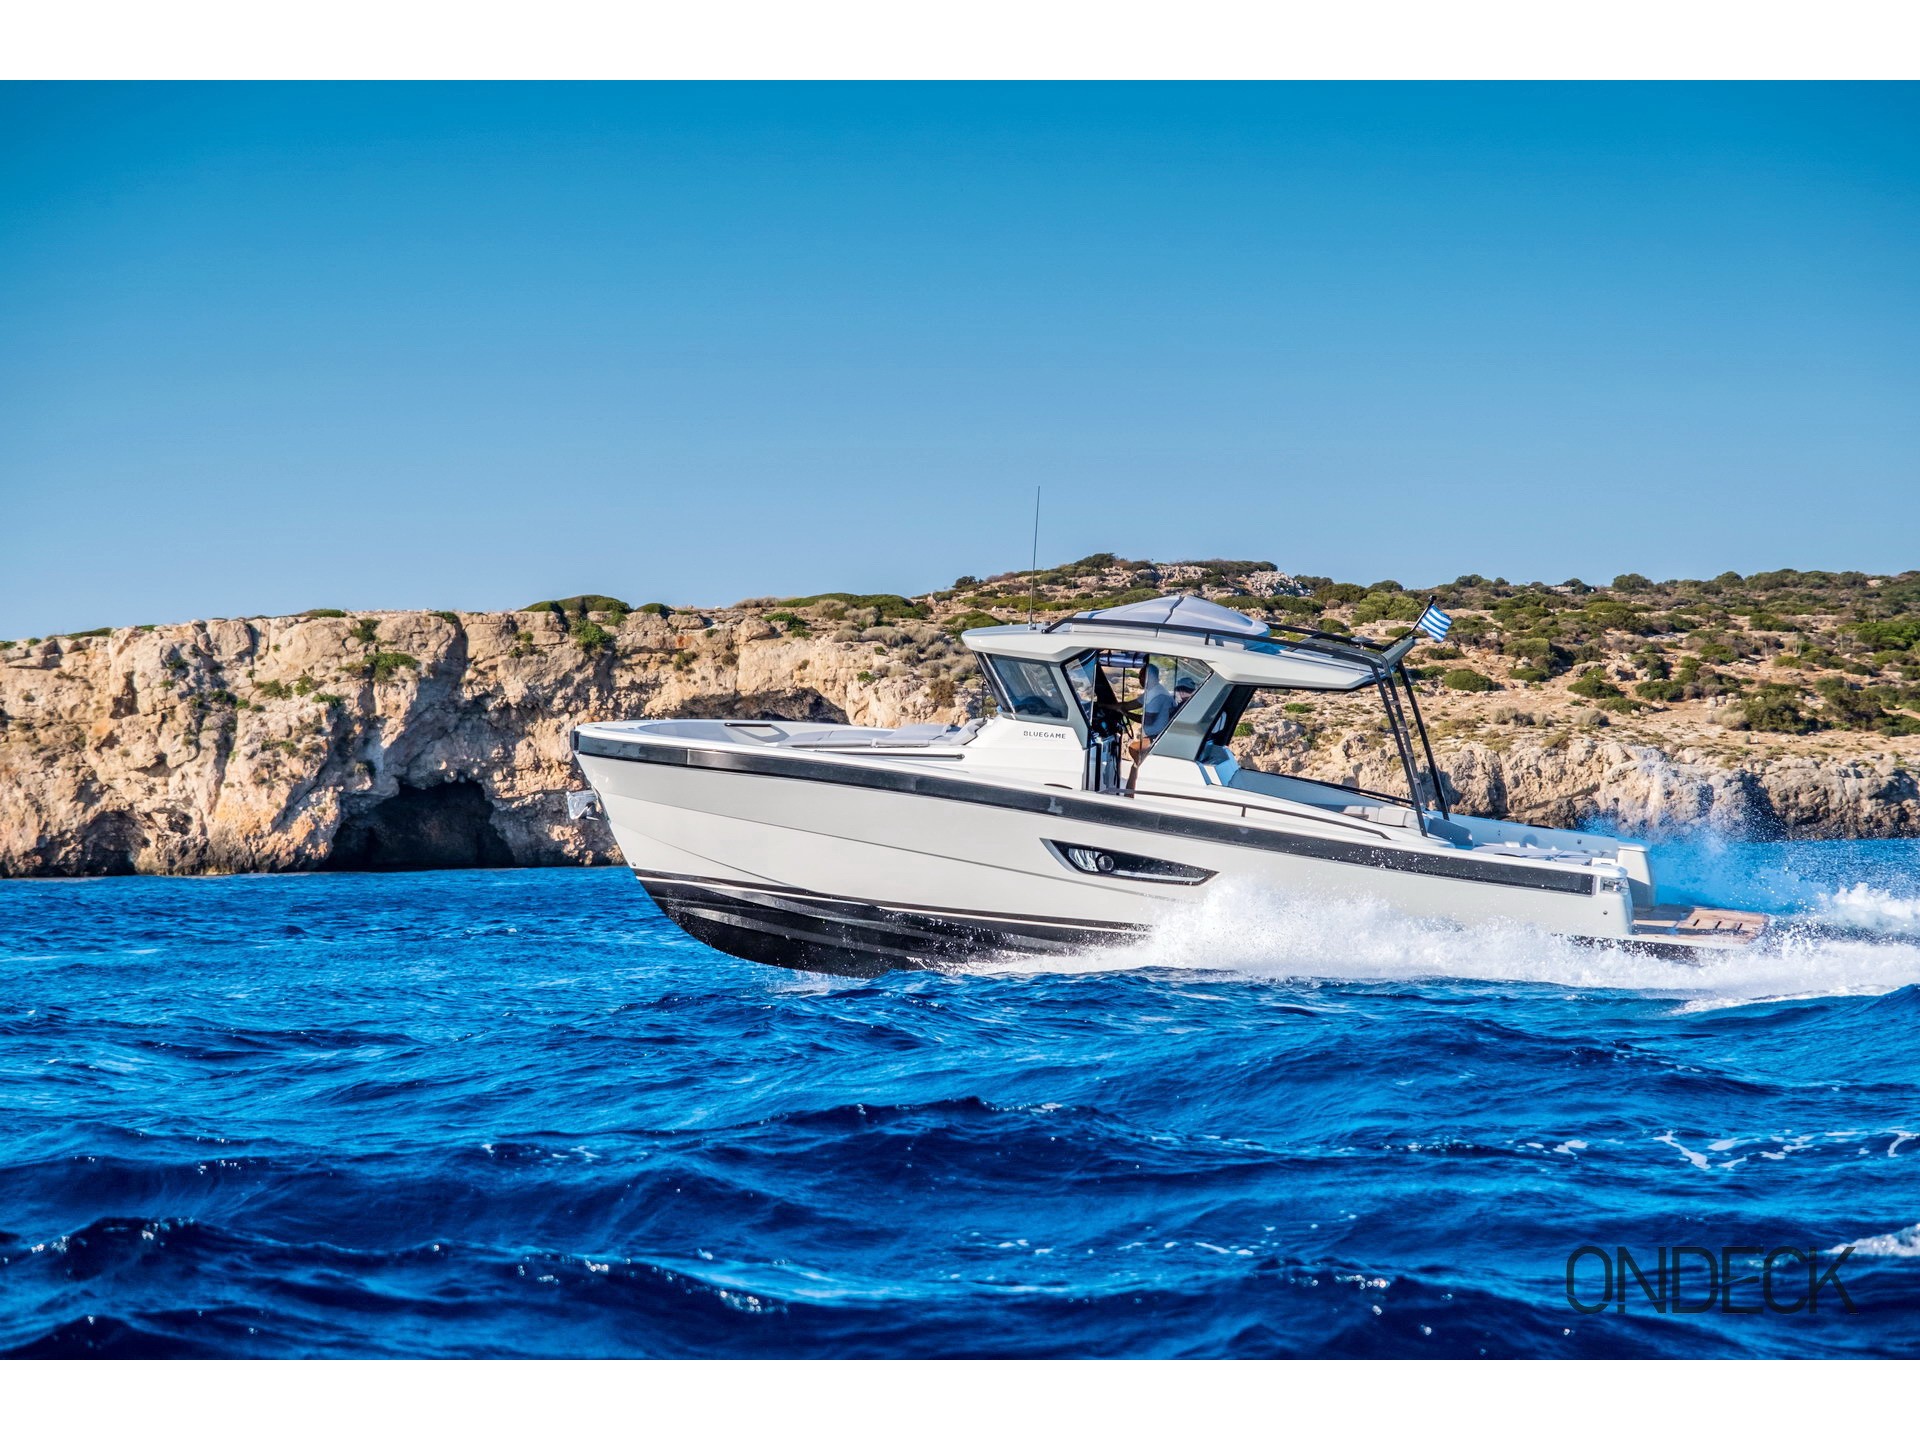 Skipper 30 - Gulet rental worldwide & Boat hire in Greece Cyclades Islands Mykonos Mykonos 1